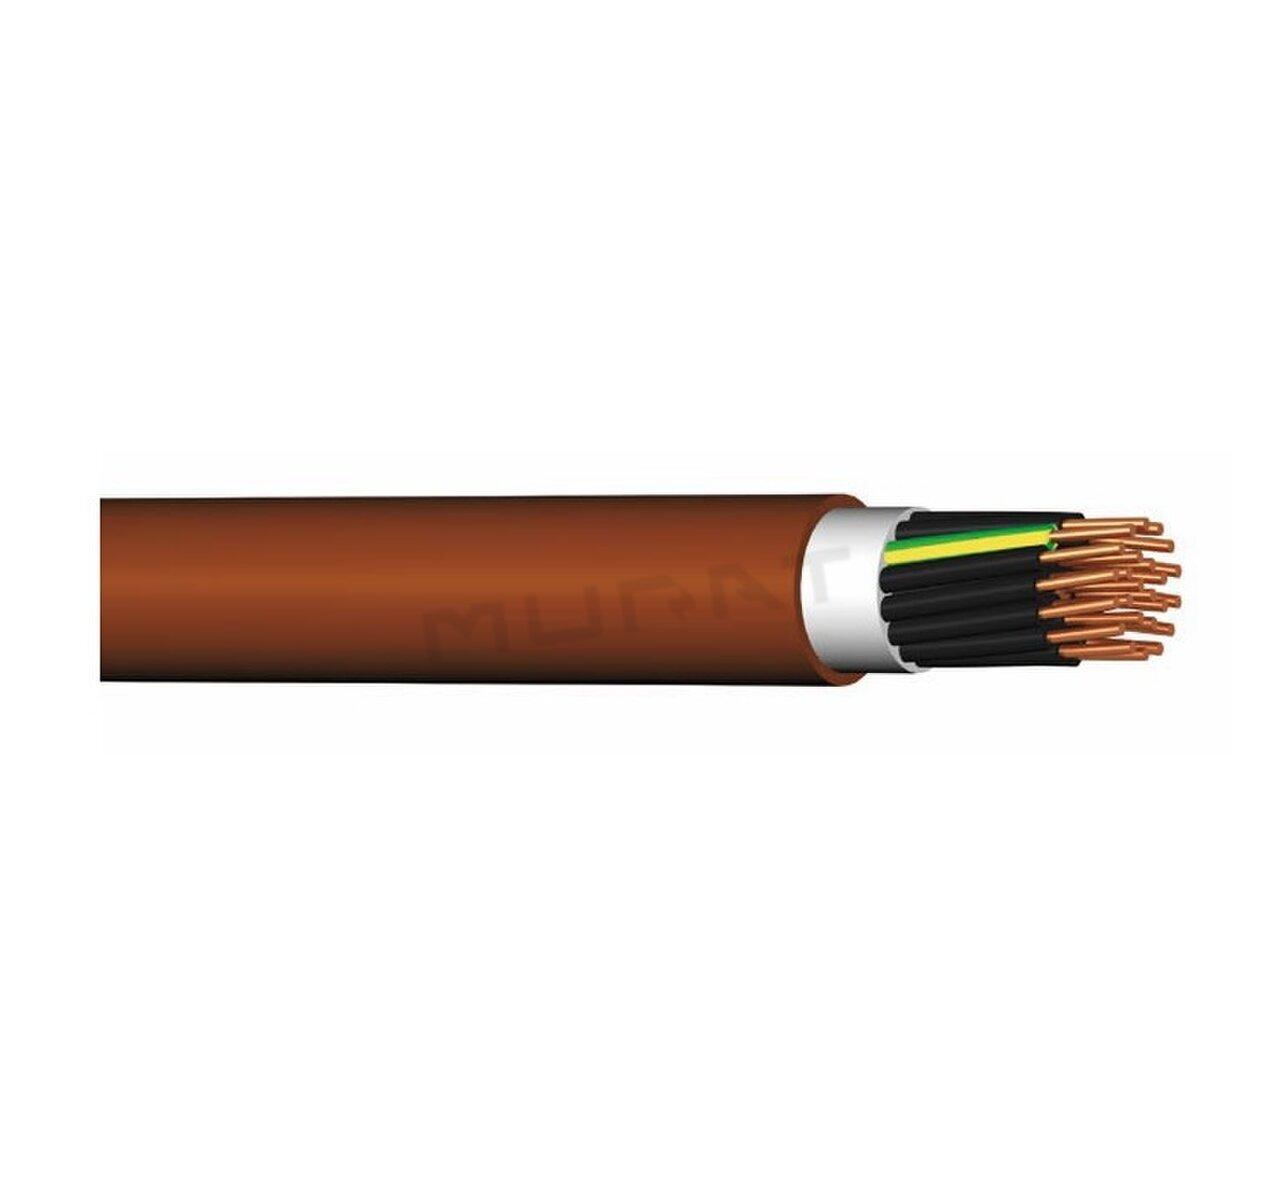 Kábel PRAFlaDur-O 2x1,5 mm2 RE PH120-R, PS15-PS60, B2cas1d1a1 silový